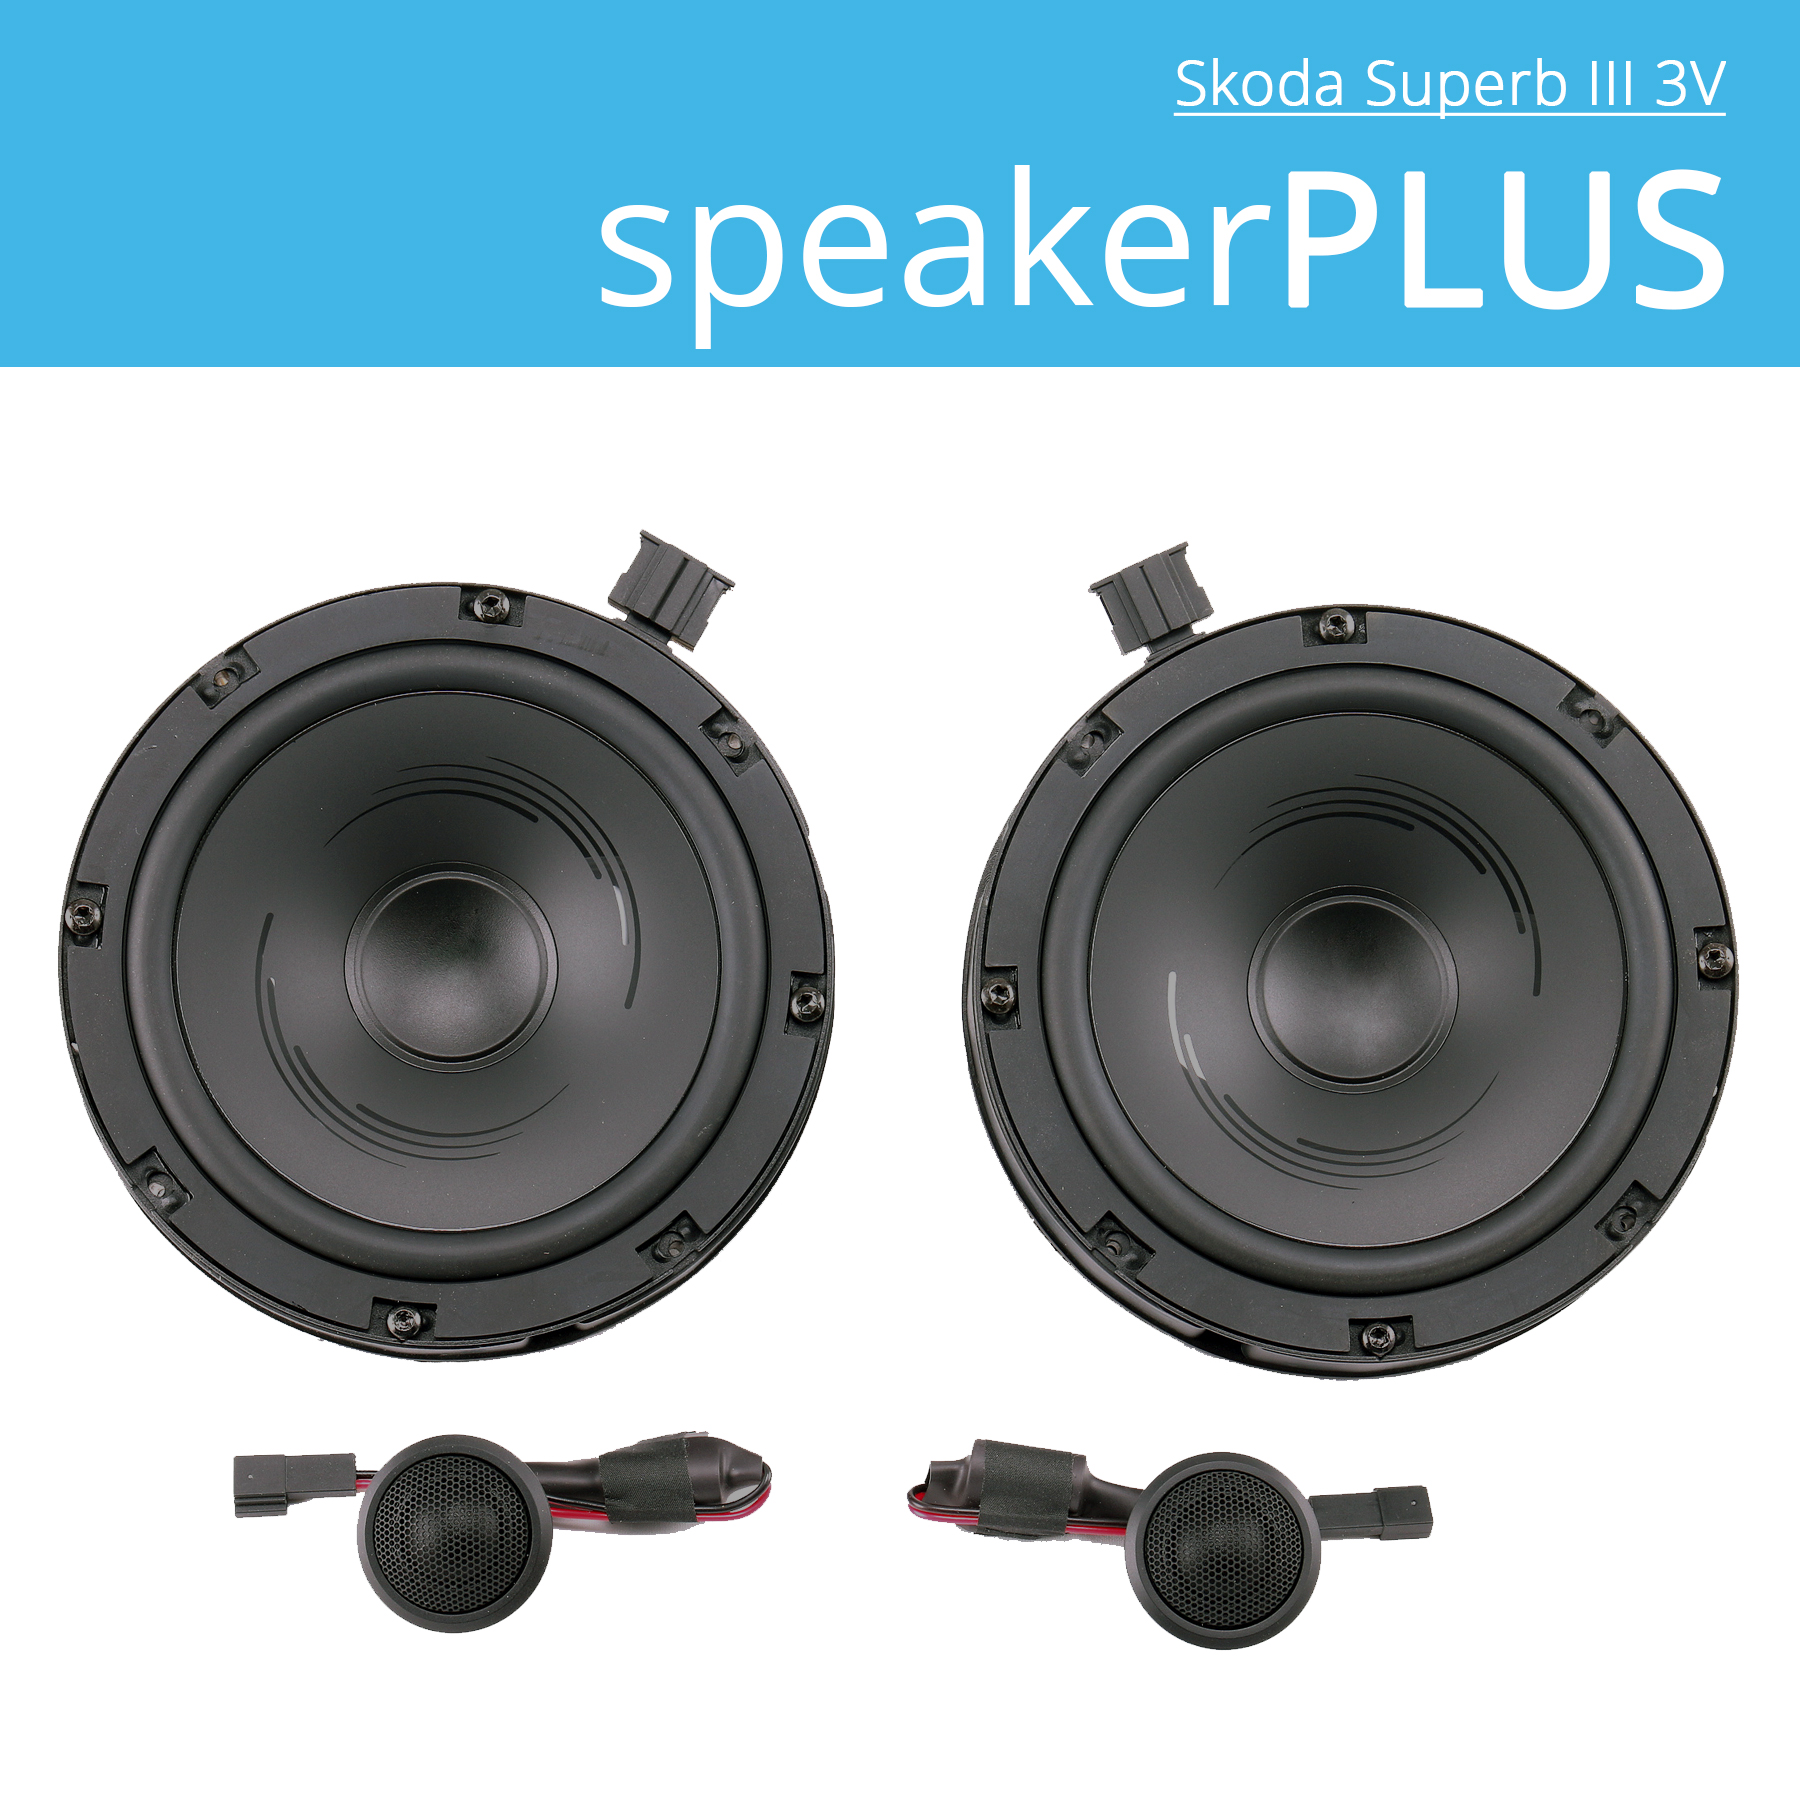 Skoda Superb III 3V speakerPLUS